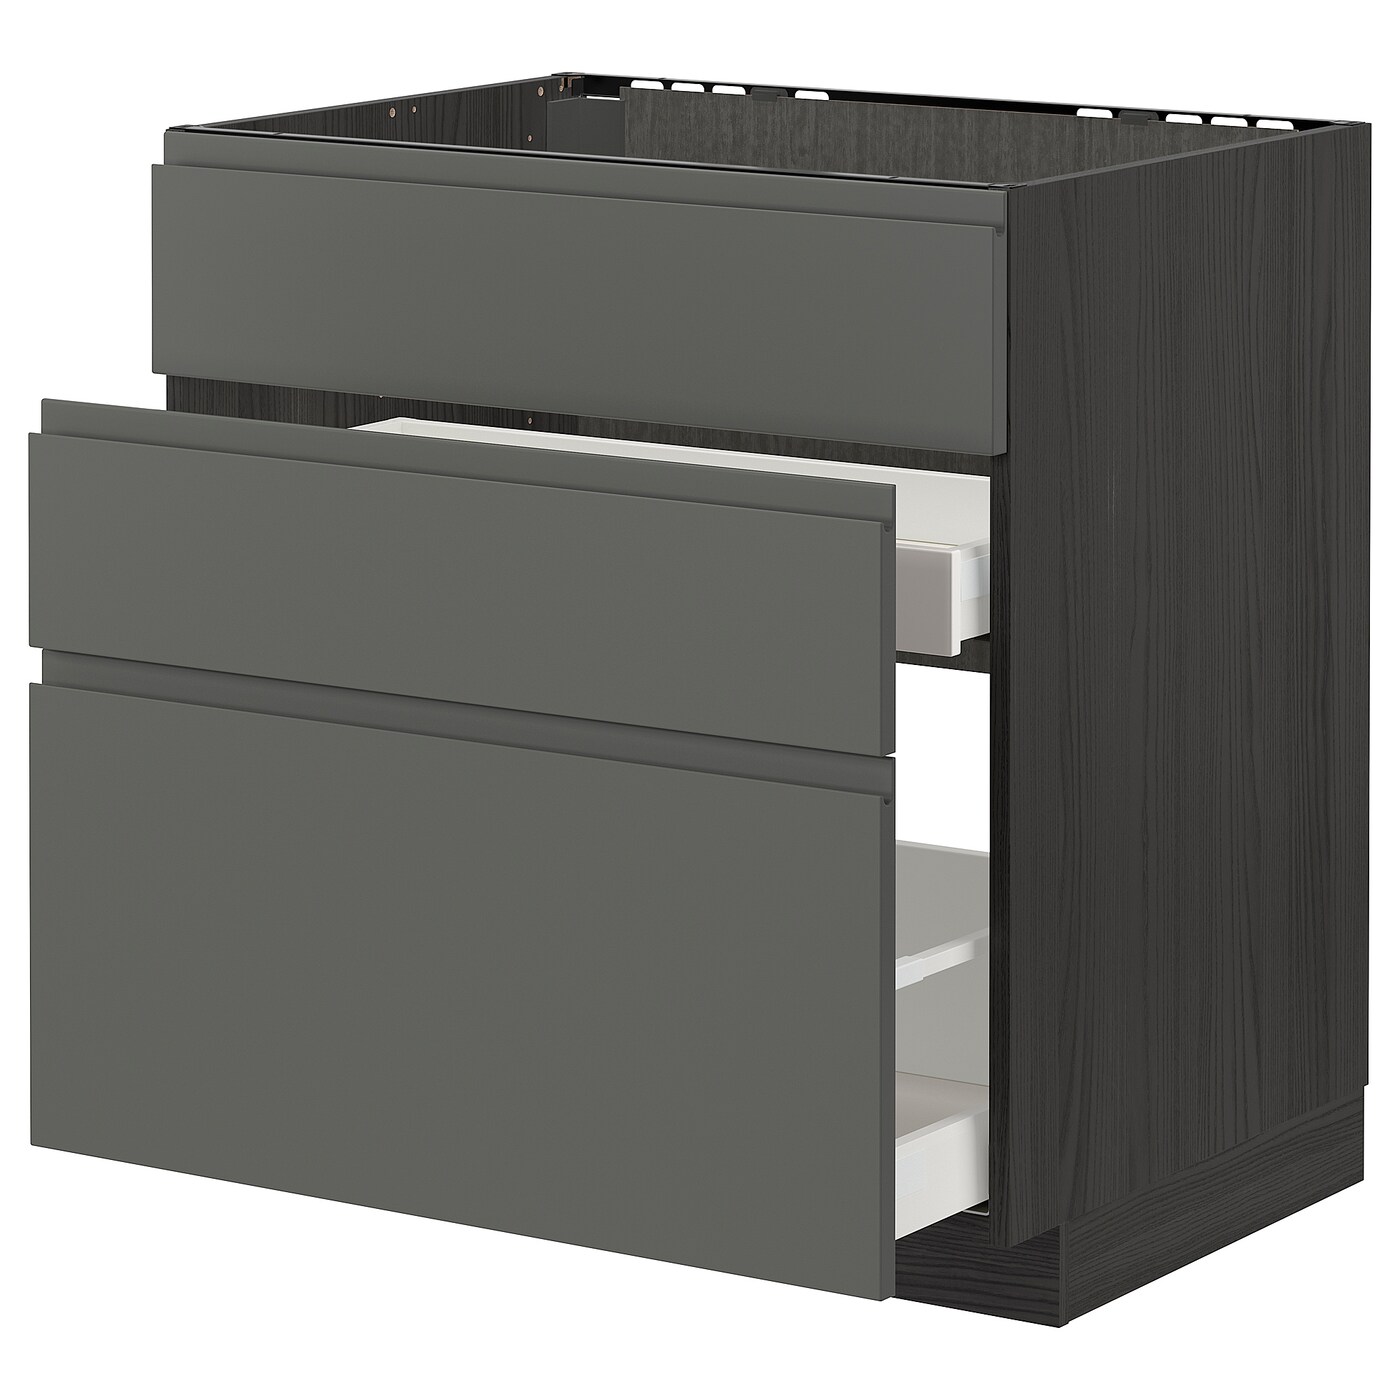 Напольный кухонный шкаф  - IKEA METOD MAXIMERA, 88x62x80см, темно-серый/серый, МЕТОД МАКСИМЕРА ИКЕА